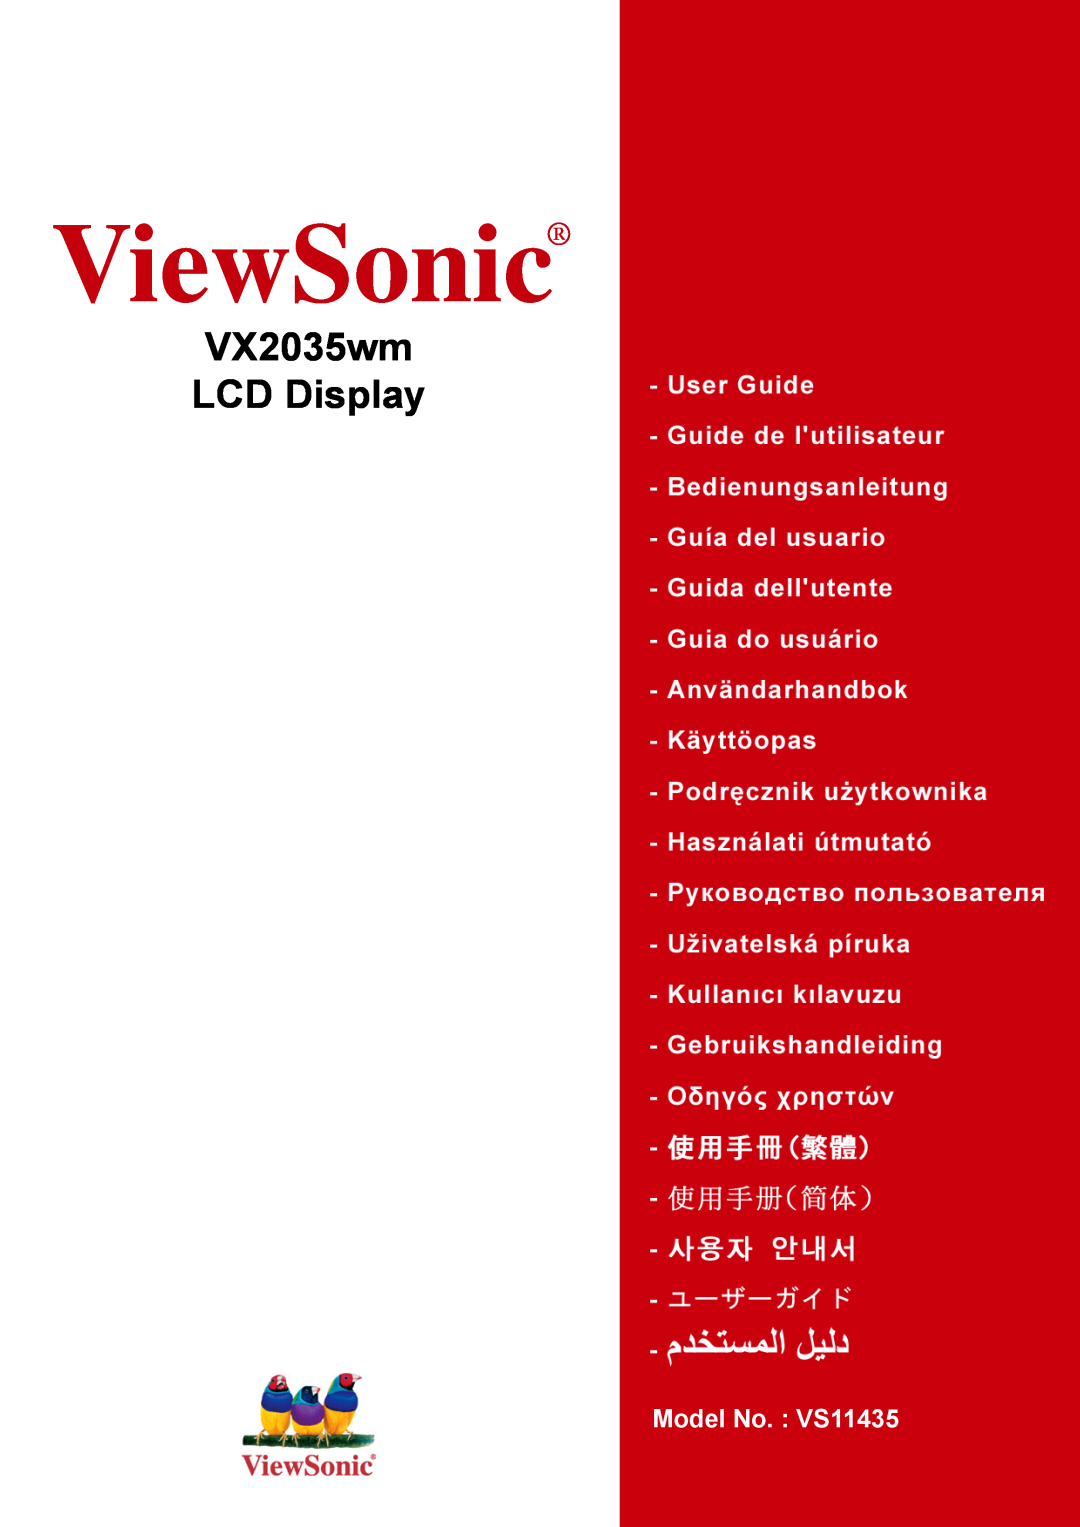 ViewSonic manual ViewSonic, VX2035wm LCD Display, Model No. VS11435 